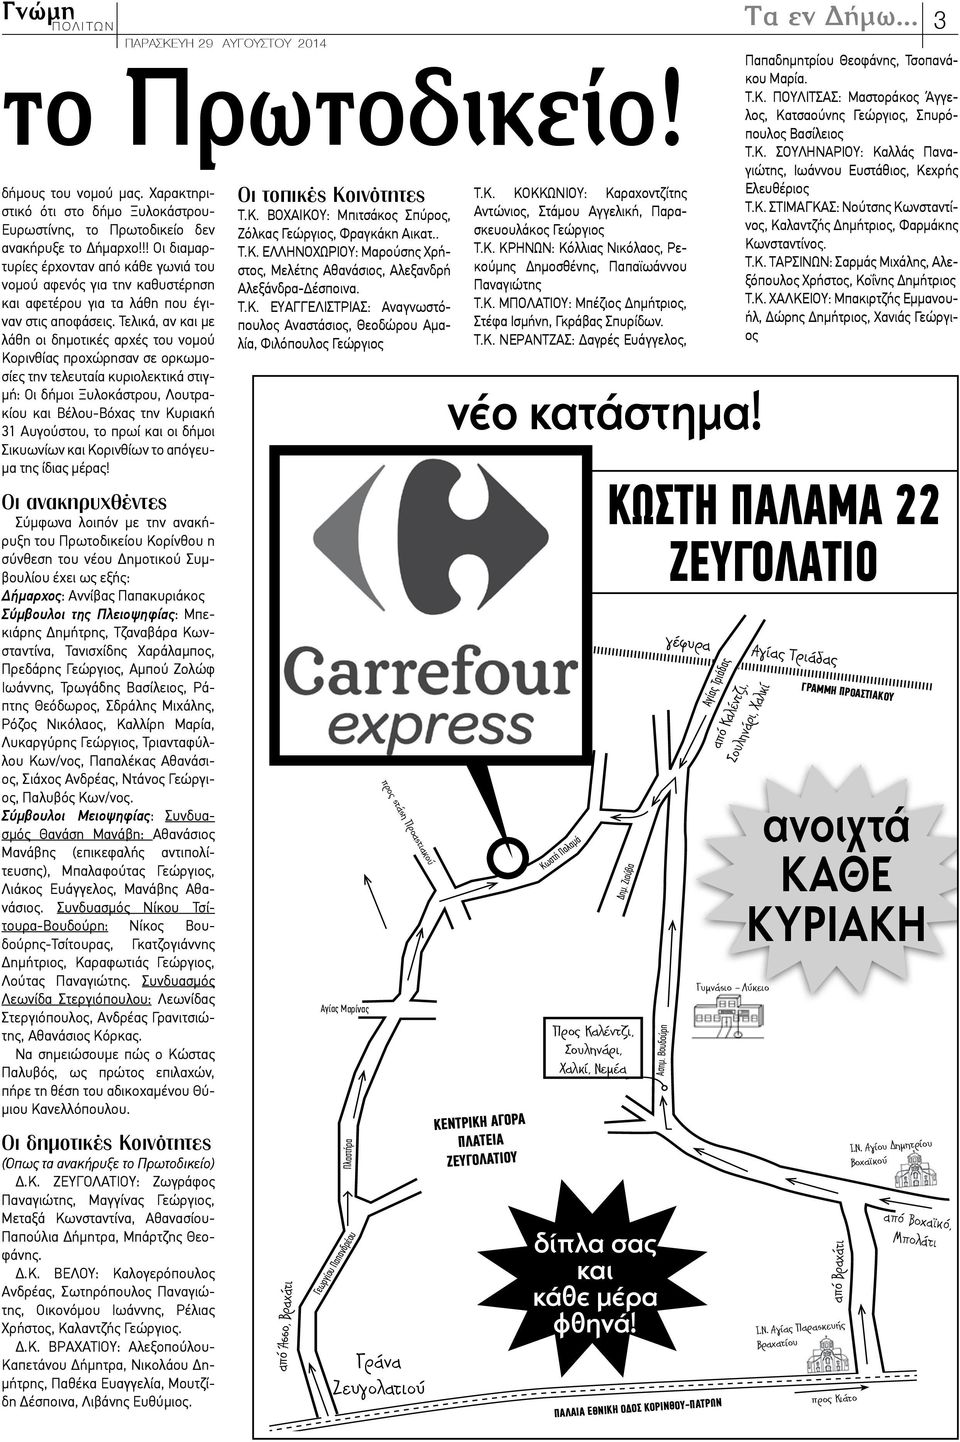 Τελικά, αν και με λάθη οι δημοτικές αρχές του νομού Κορινθίας προχώρησαν σε ορκωμοσίες την τελευταία κυριολεκτικά στιγμή: Οι δήμοι Ξυλοκάστρου, Λουτρακίου και Βέλου-Βόχας την Κυριακή 31 Αυγούστου, το